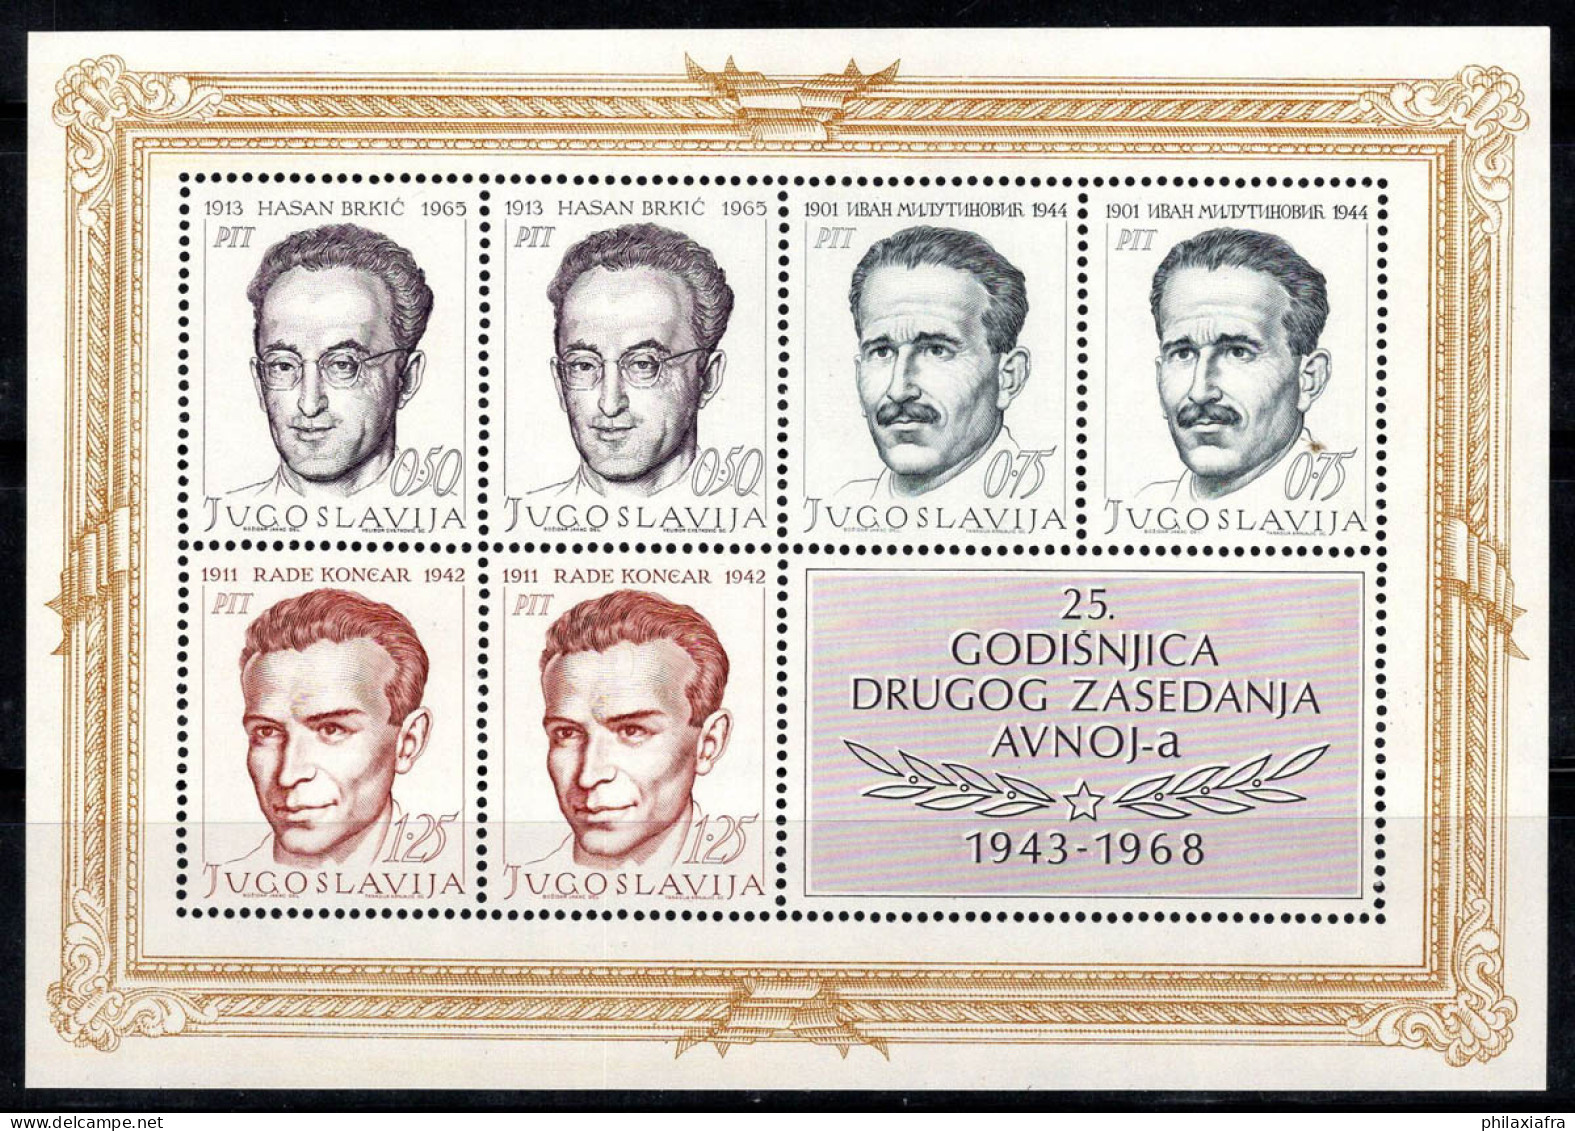 Yougoslavie 1968 Mi. Bl. 13 Bloc Feuillet 100% Neuf ** Célébrités, Héros - Hojas Y Bloques